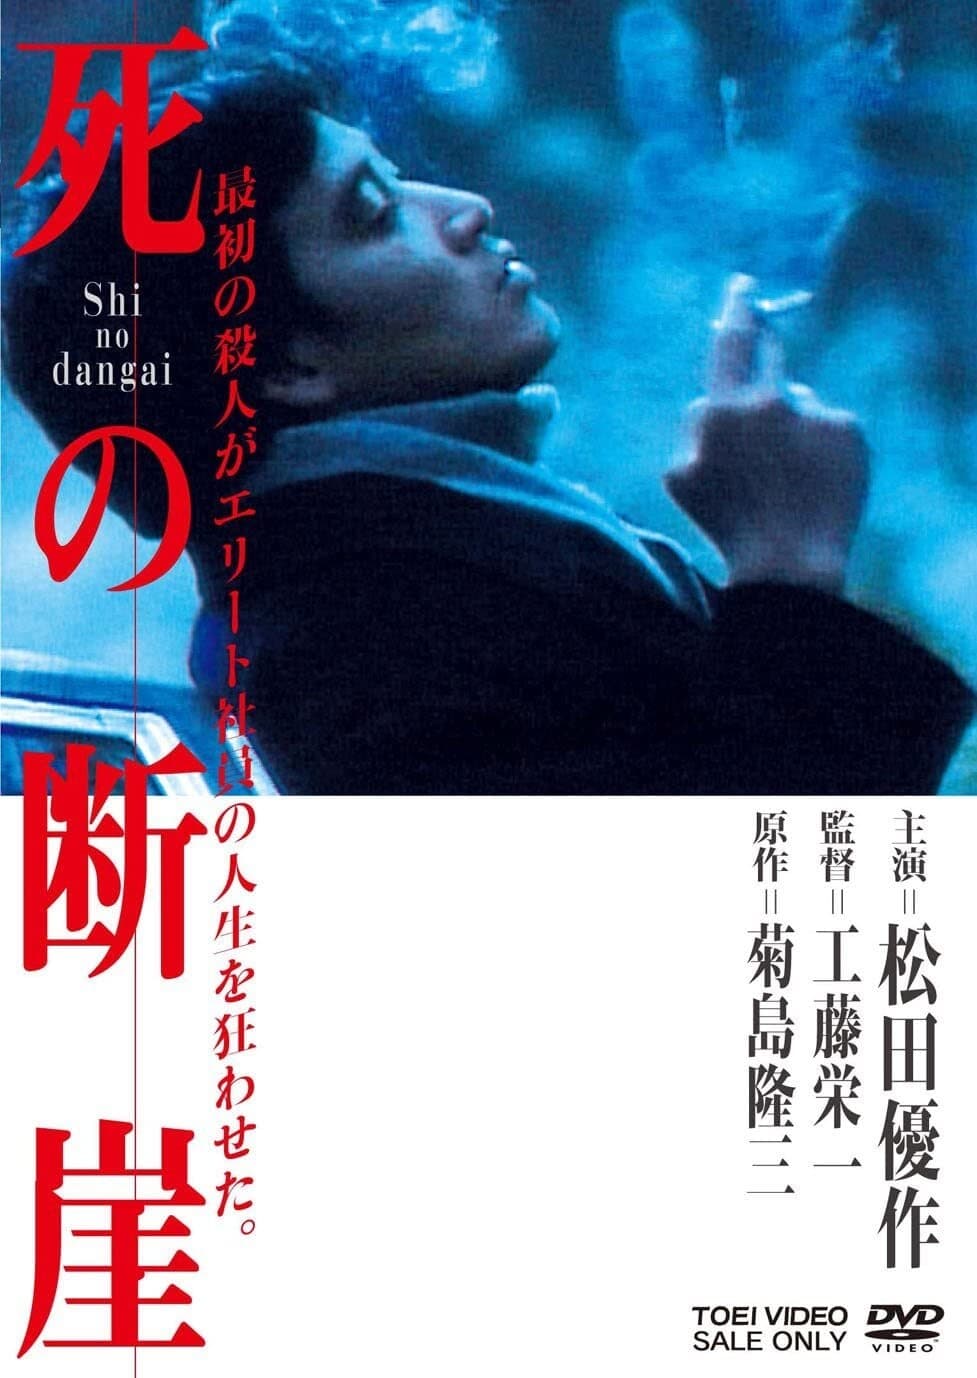 Shi no dangai (1982)